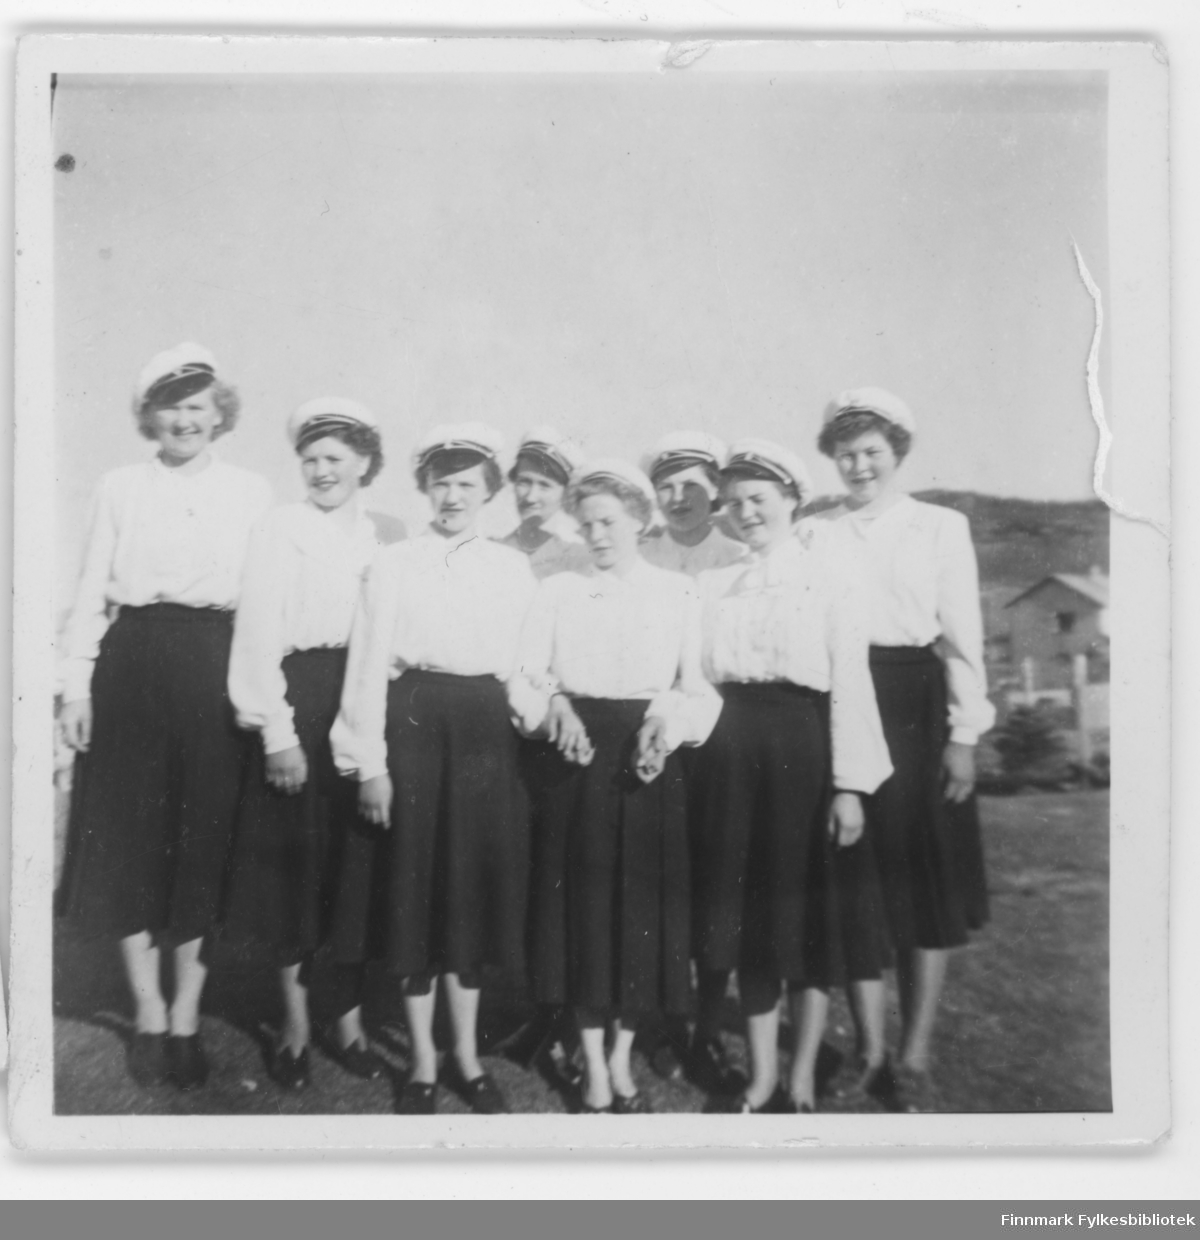 Nordvågen Sangforening eller Damekor? Kvinnene har sangerluer på seg. Kanskje det er 17. mai og året er 1948 som de andre 17. mai bildene i denne samlingen? Damen til venstre heter Irene G. Eriksen fra Nordvågen.